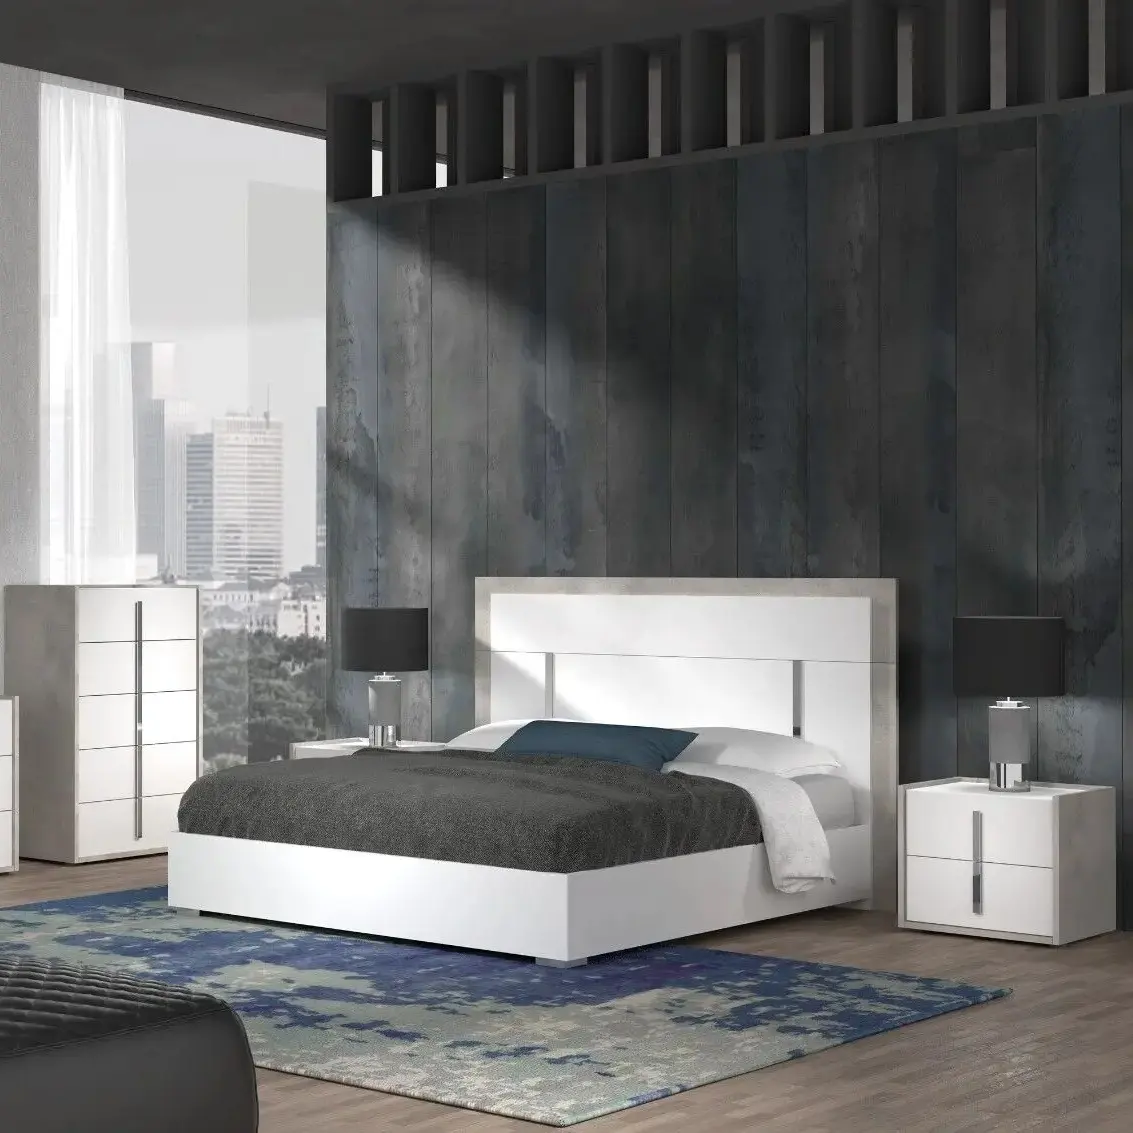 ชุดเฟอร์นิเจอร์ห้องนอนสำหรับบ้านทำจากไม้ขนาดควีนไซส์สำหรับโรงแรม